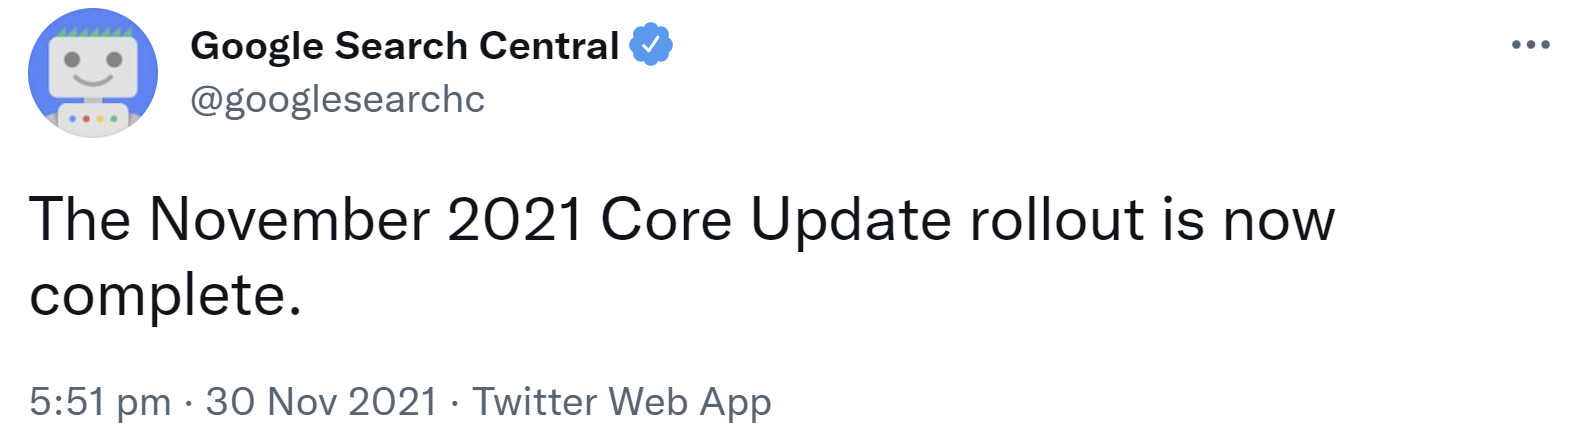 Google: Rollout November 2021 Core Update ist abgeschlossen